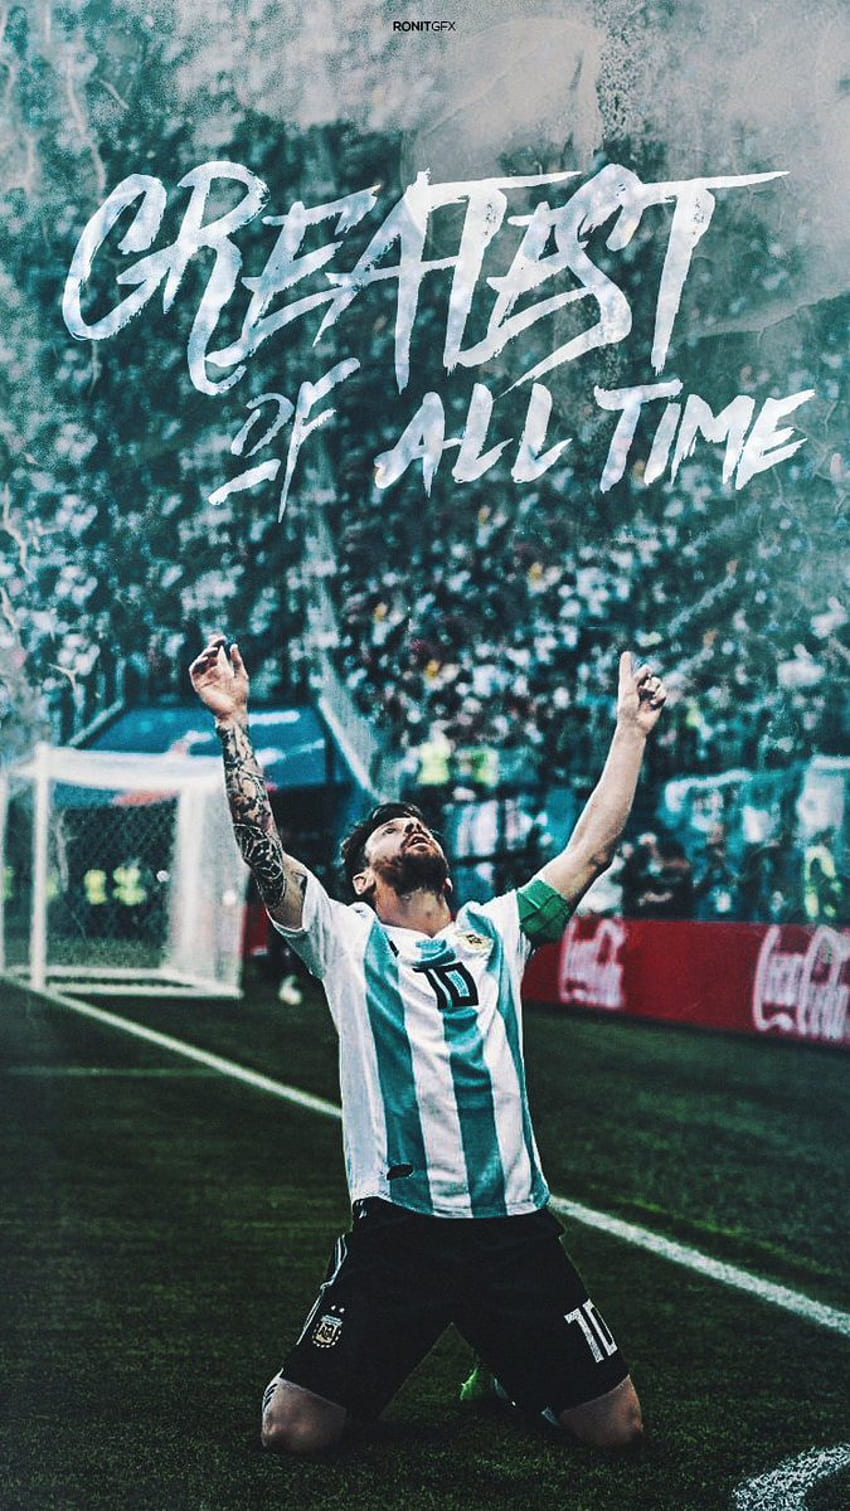 Hãy trang trí cho thiết bị của bạn với những hình nền với chất lượng HD chụp Lionel Messi khi anh ấy thi đấu cho đội tuyển Argentina! Những hình nền đặc biệt này cho phép bạn thể hiện niềm đam mê với Messi và quốc gia Argentina của mình.